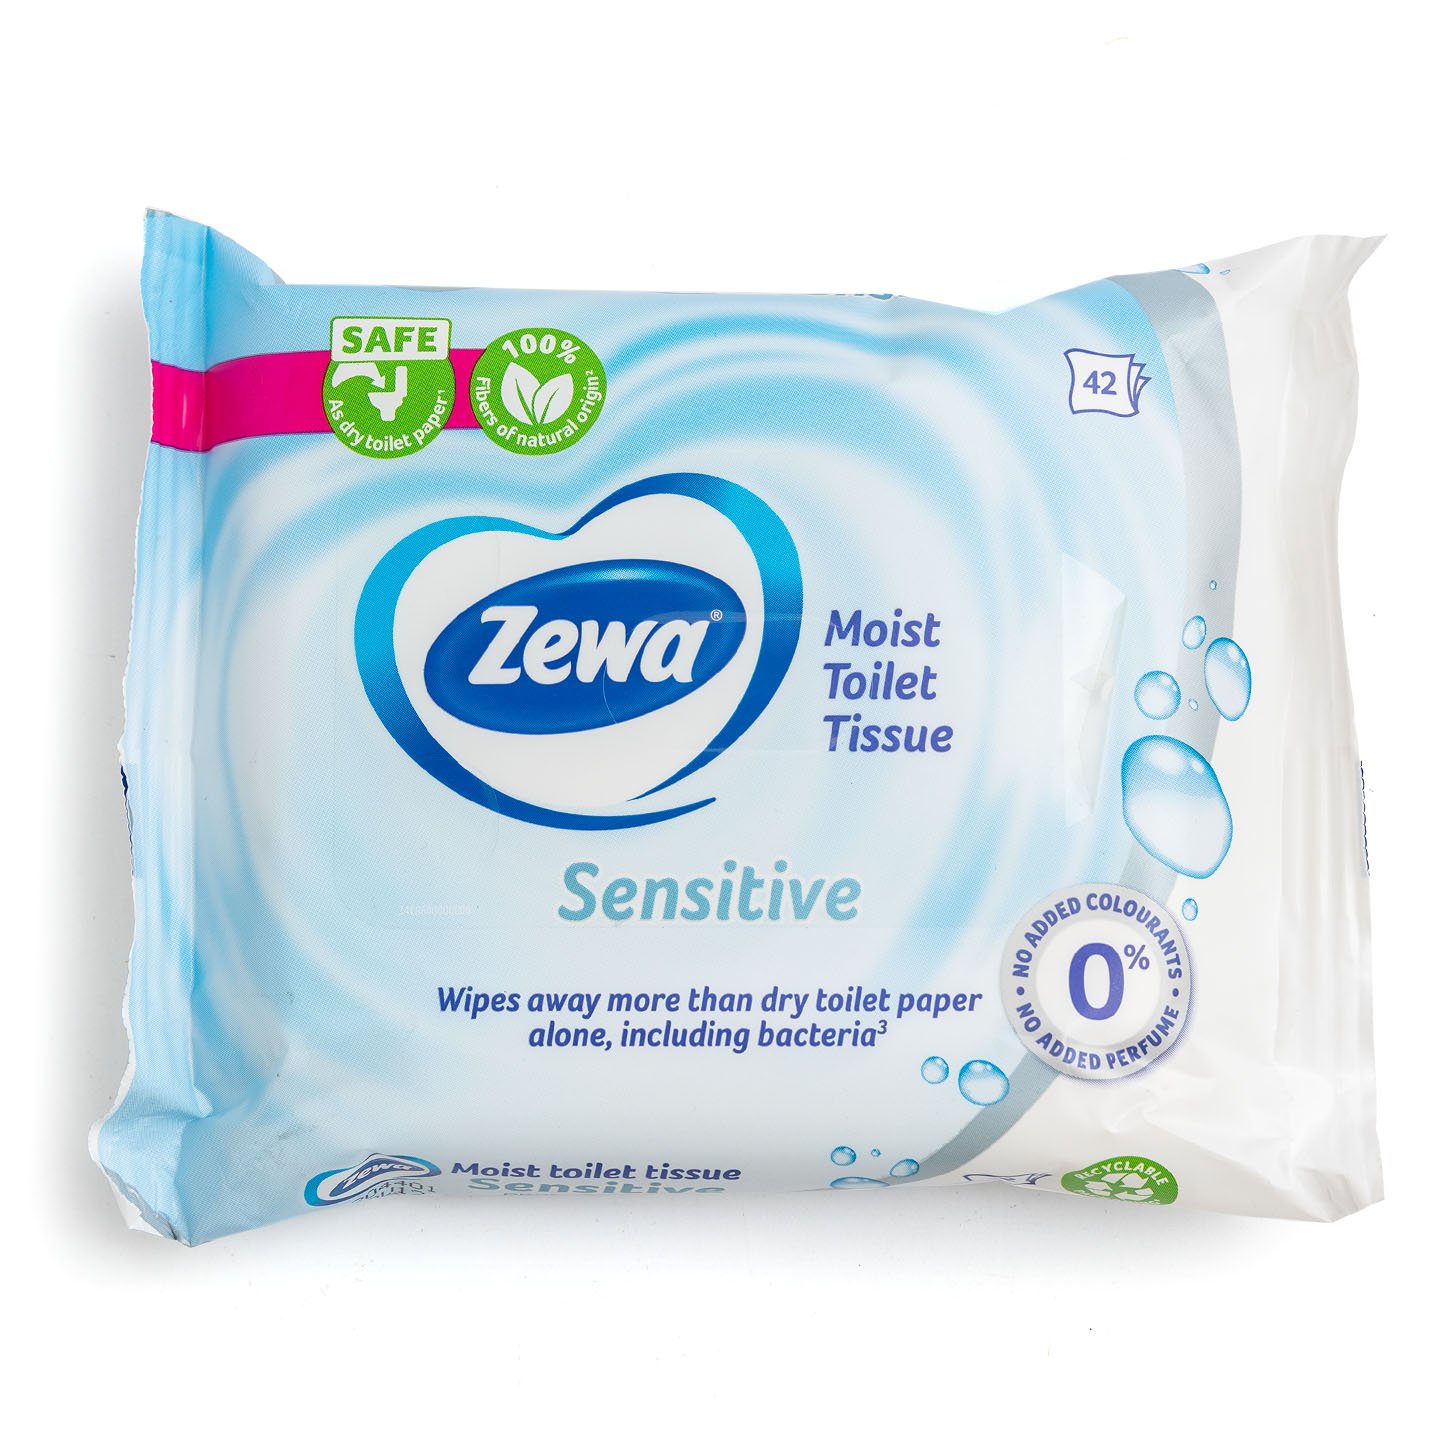 Hârtie igienică umedă Sensitive / Aloe Vera Zewa 42 bucăți